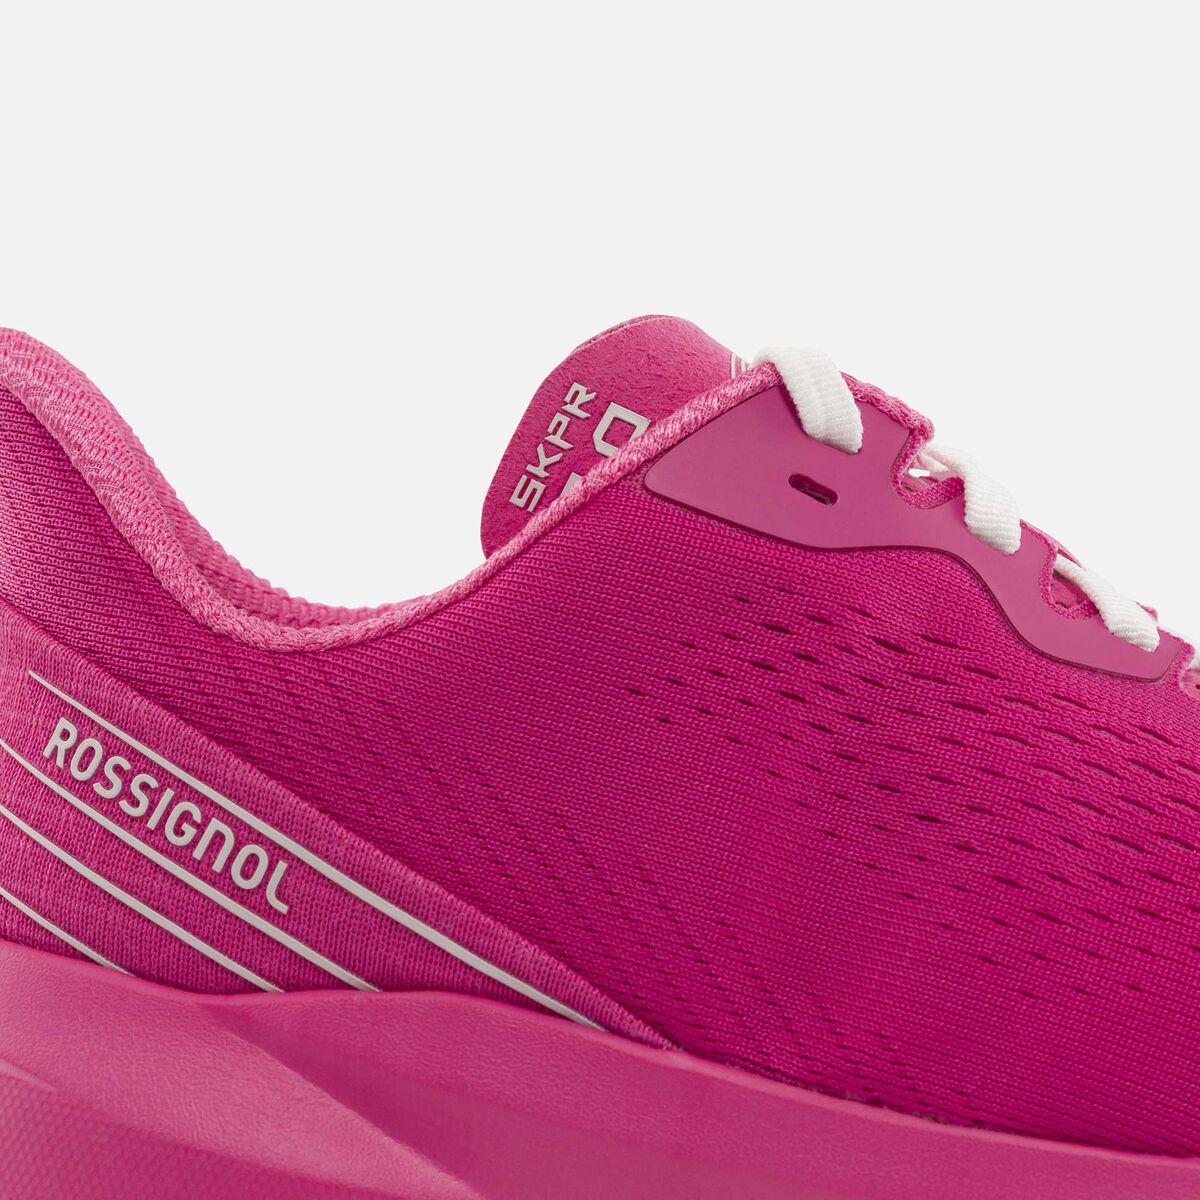 Rossignol Women's SKPR 2.0 Active Shoes pinkpurple